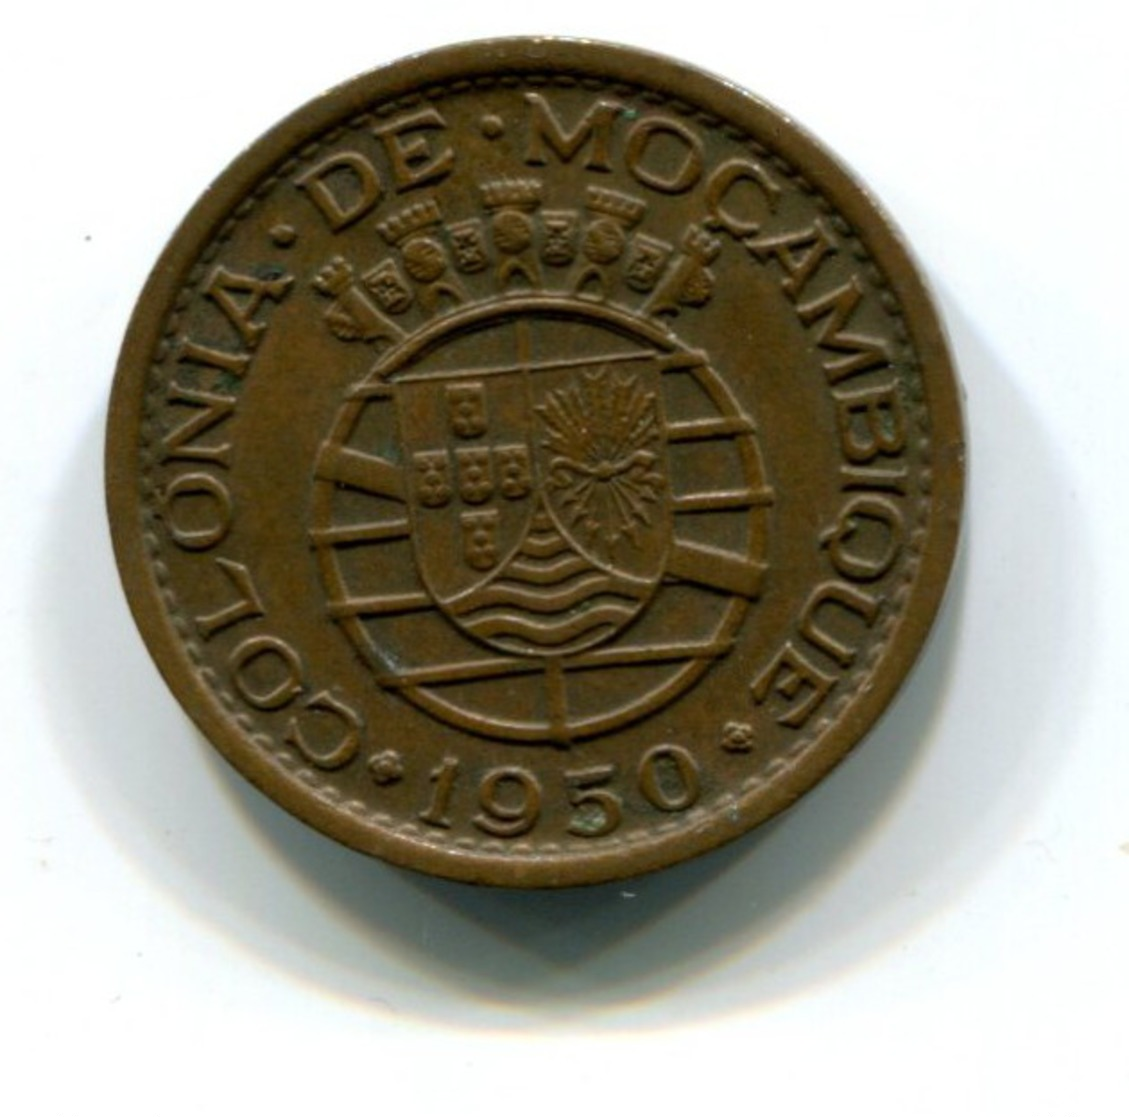 1950 Mozambique 20 Centavos Coin - Mozambique